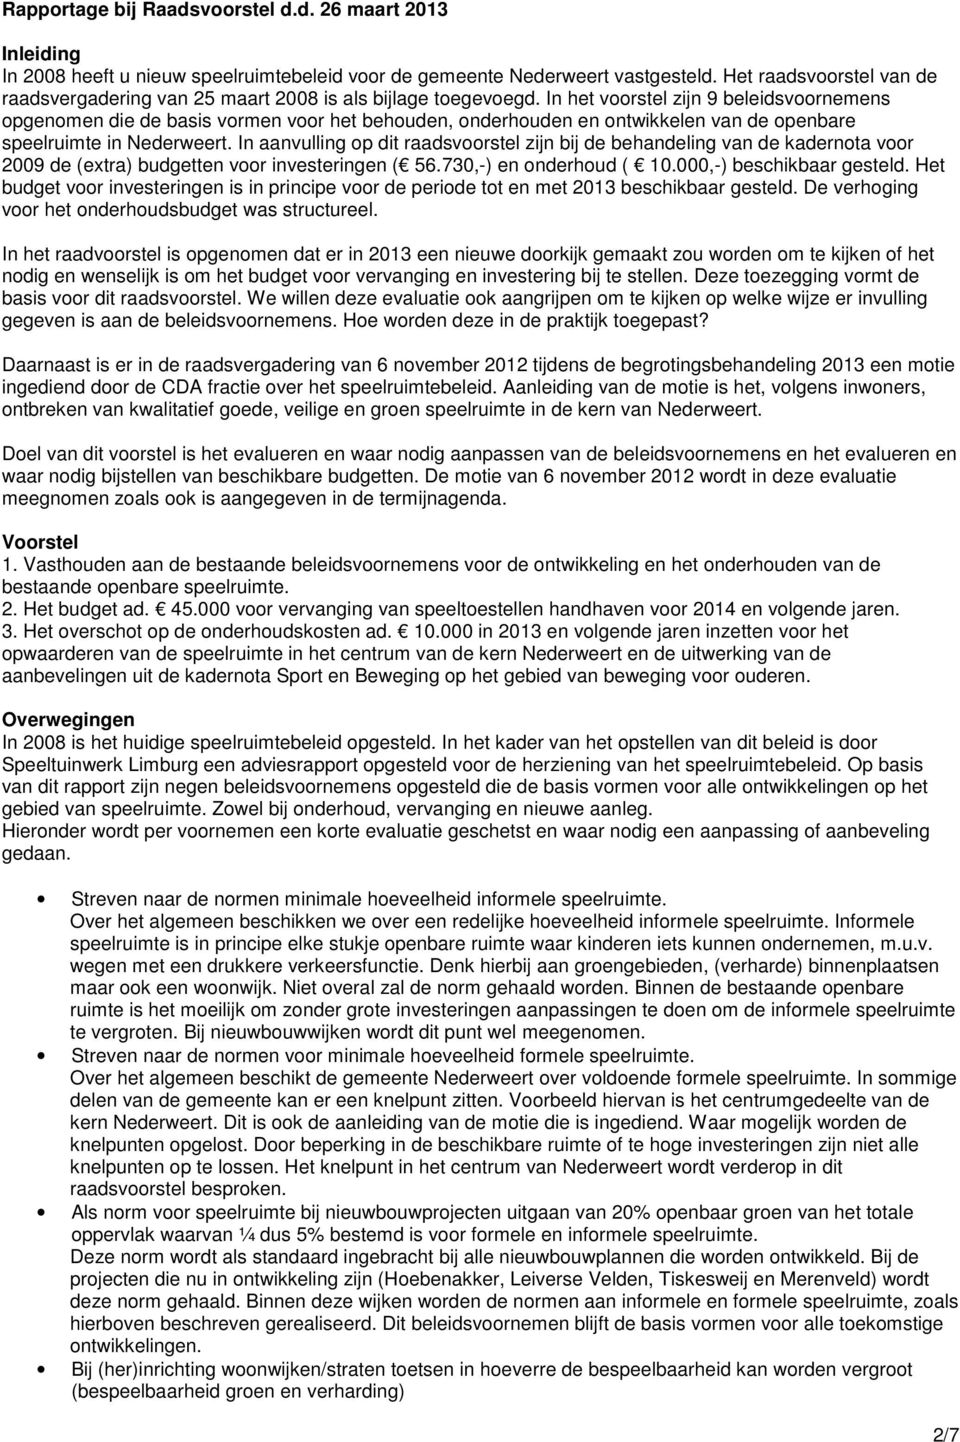 In het voorstel zijn 9 beleidsvoornemens opgenomen die de basis vormen voor het behouden, onderhouden en ontwikkelen van de openbare speelruimte in Nederweert.